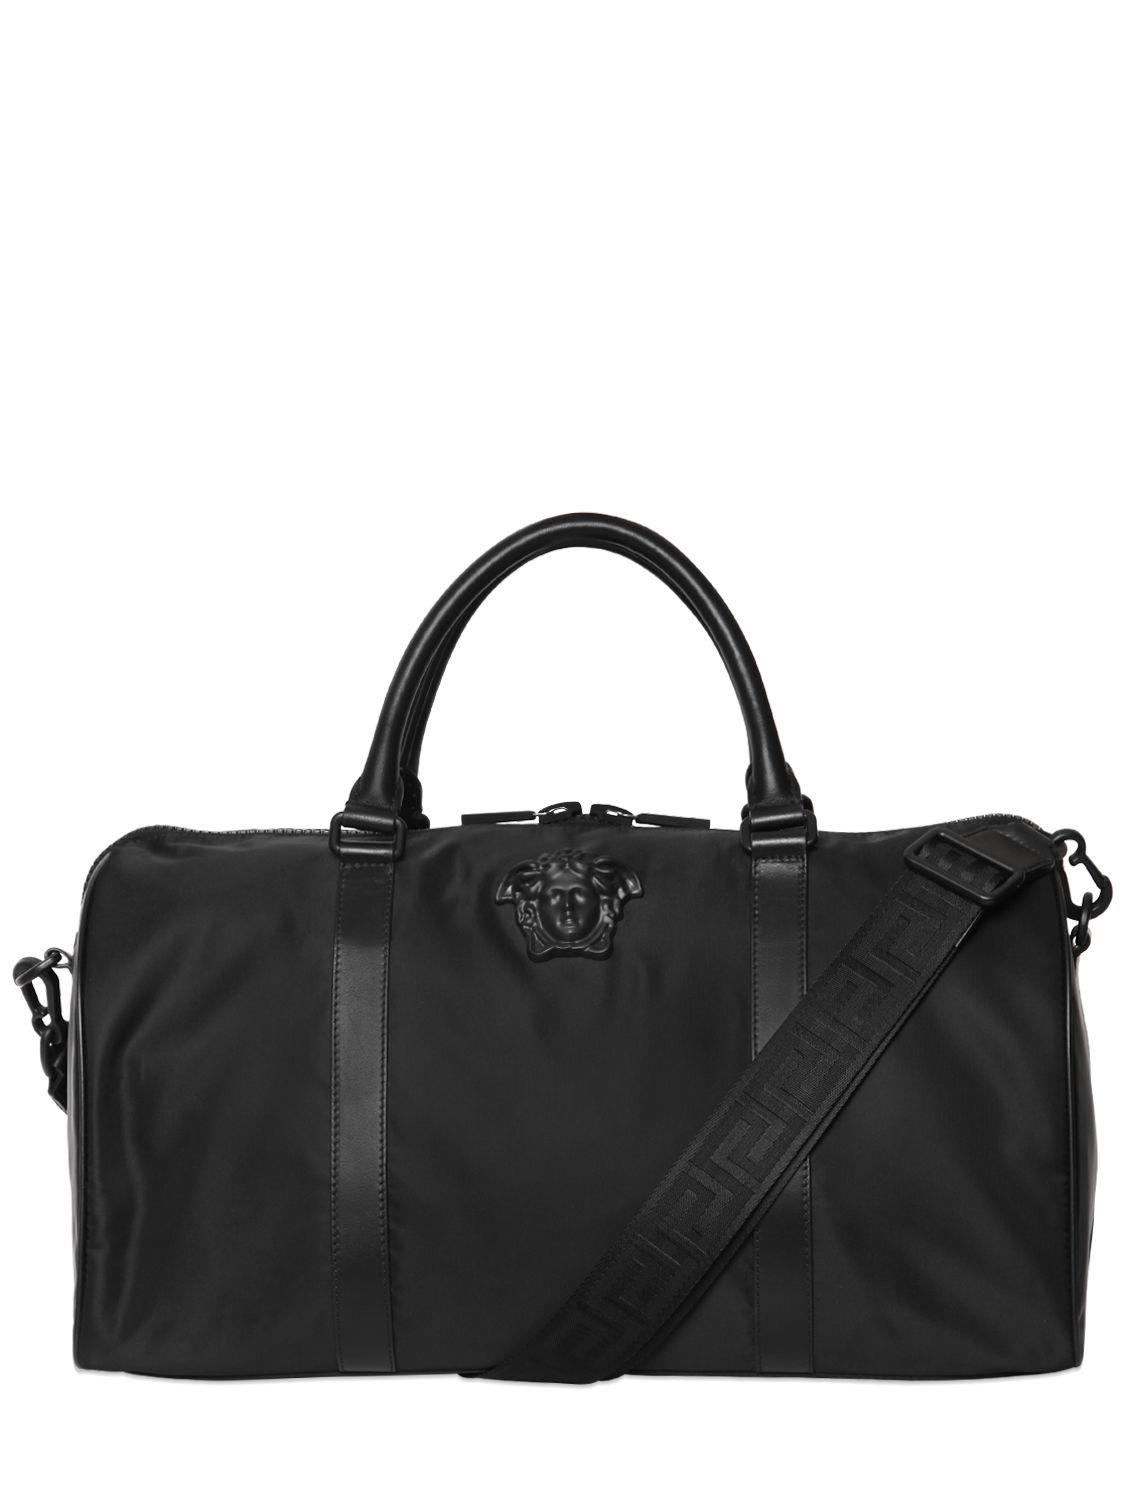 Lyst - Versace Medusa Nylon Duffle Bag in Black for Men